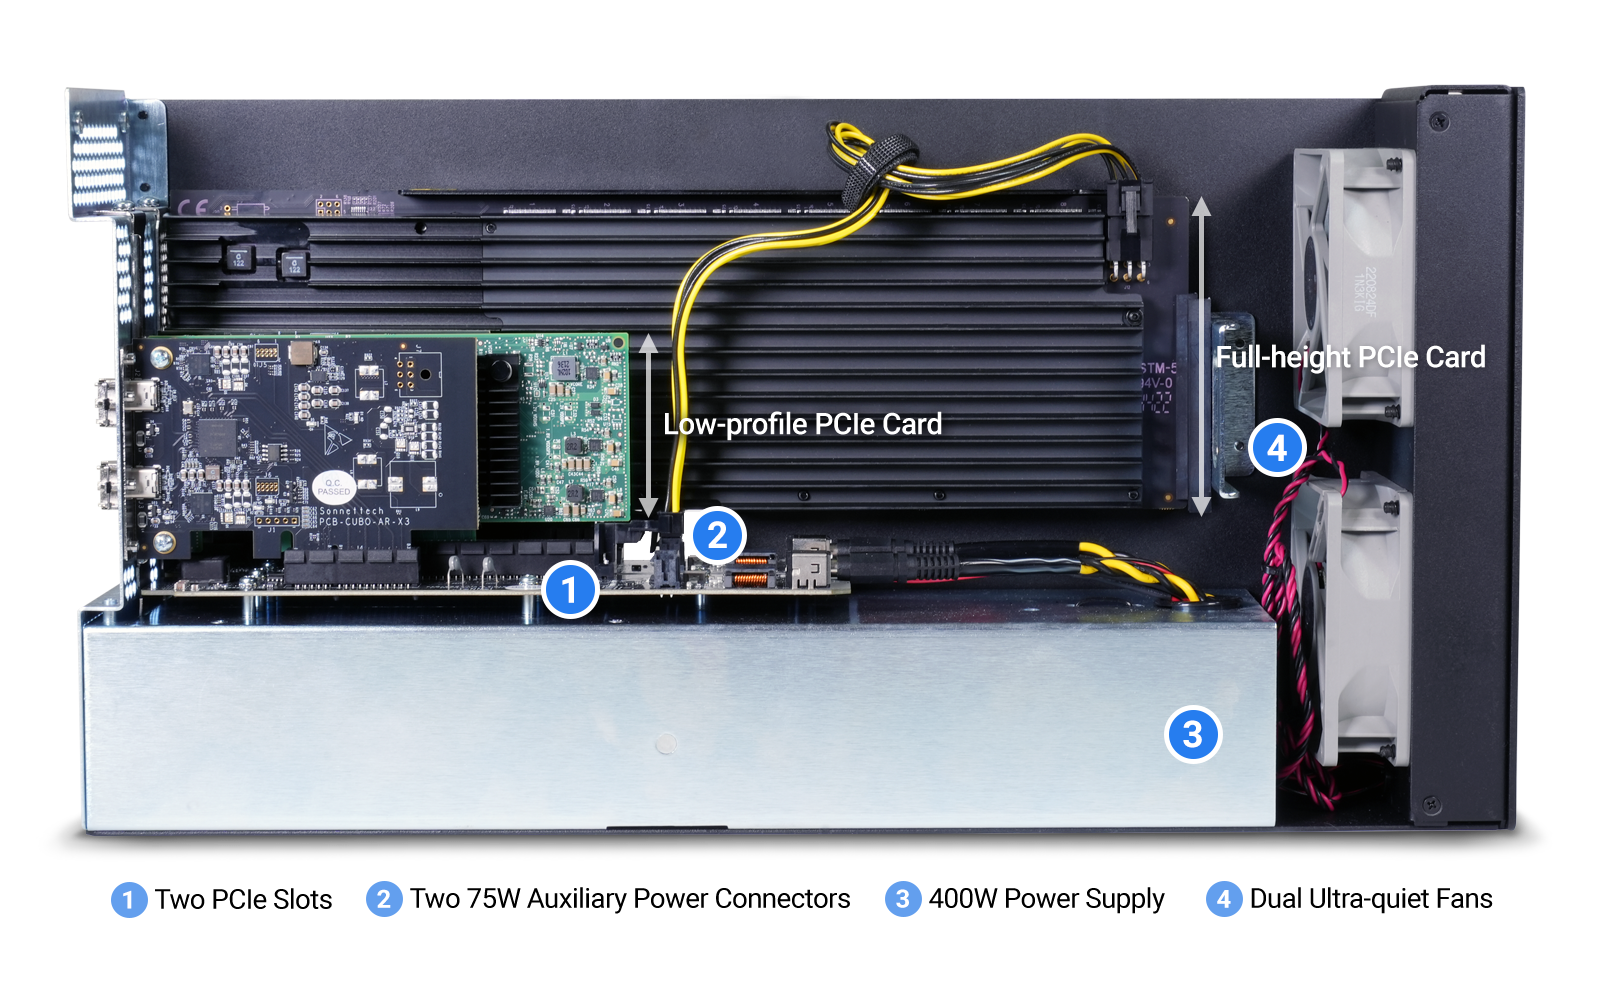 Overview of Echo II DV Desktop Features